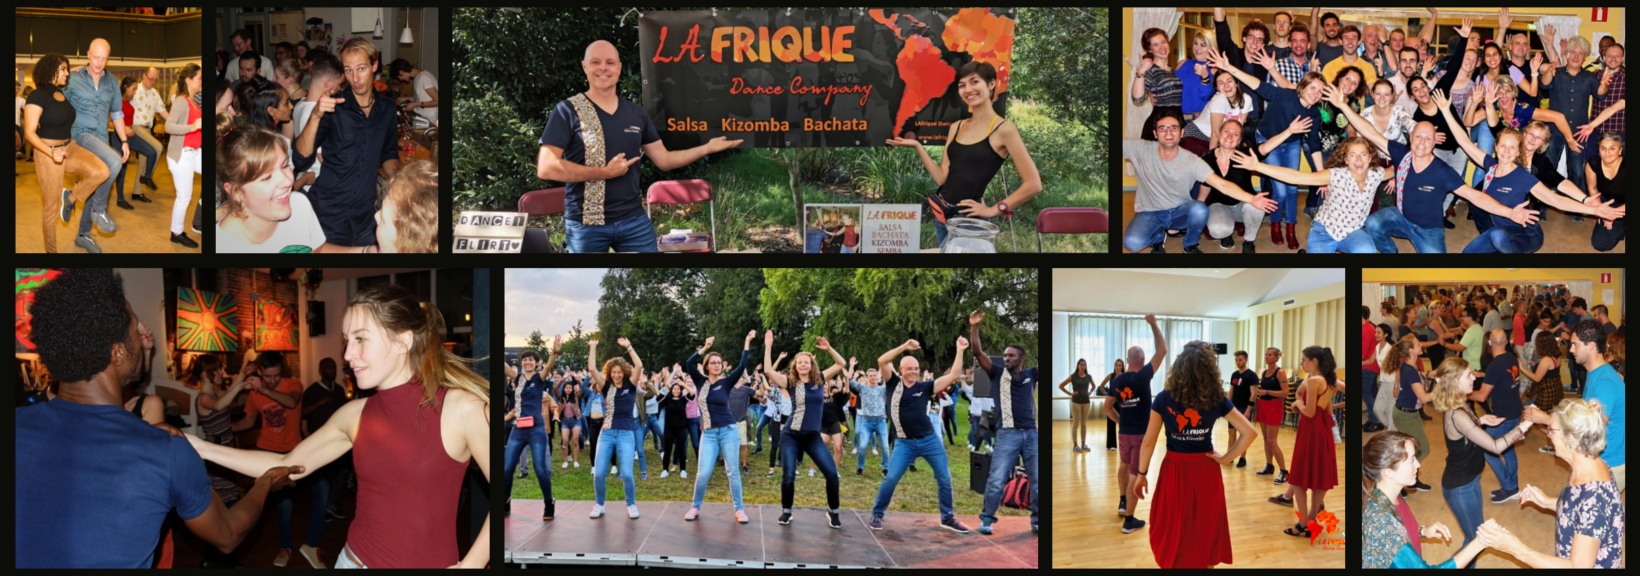 Lafrique Dance Company